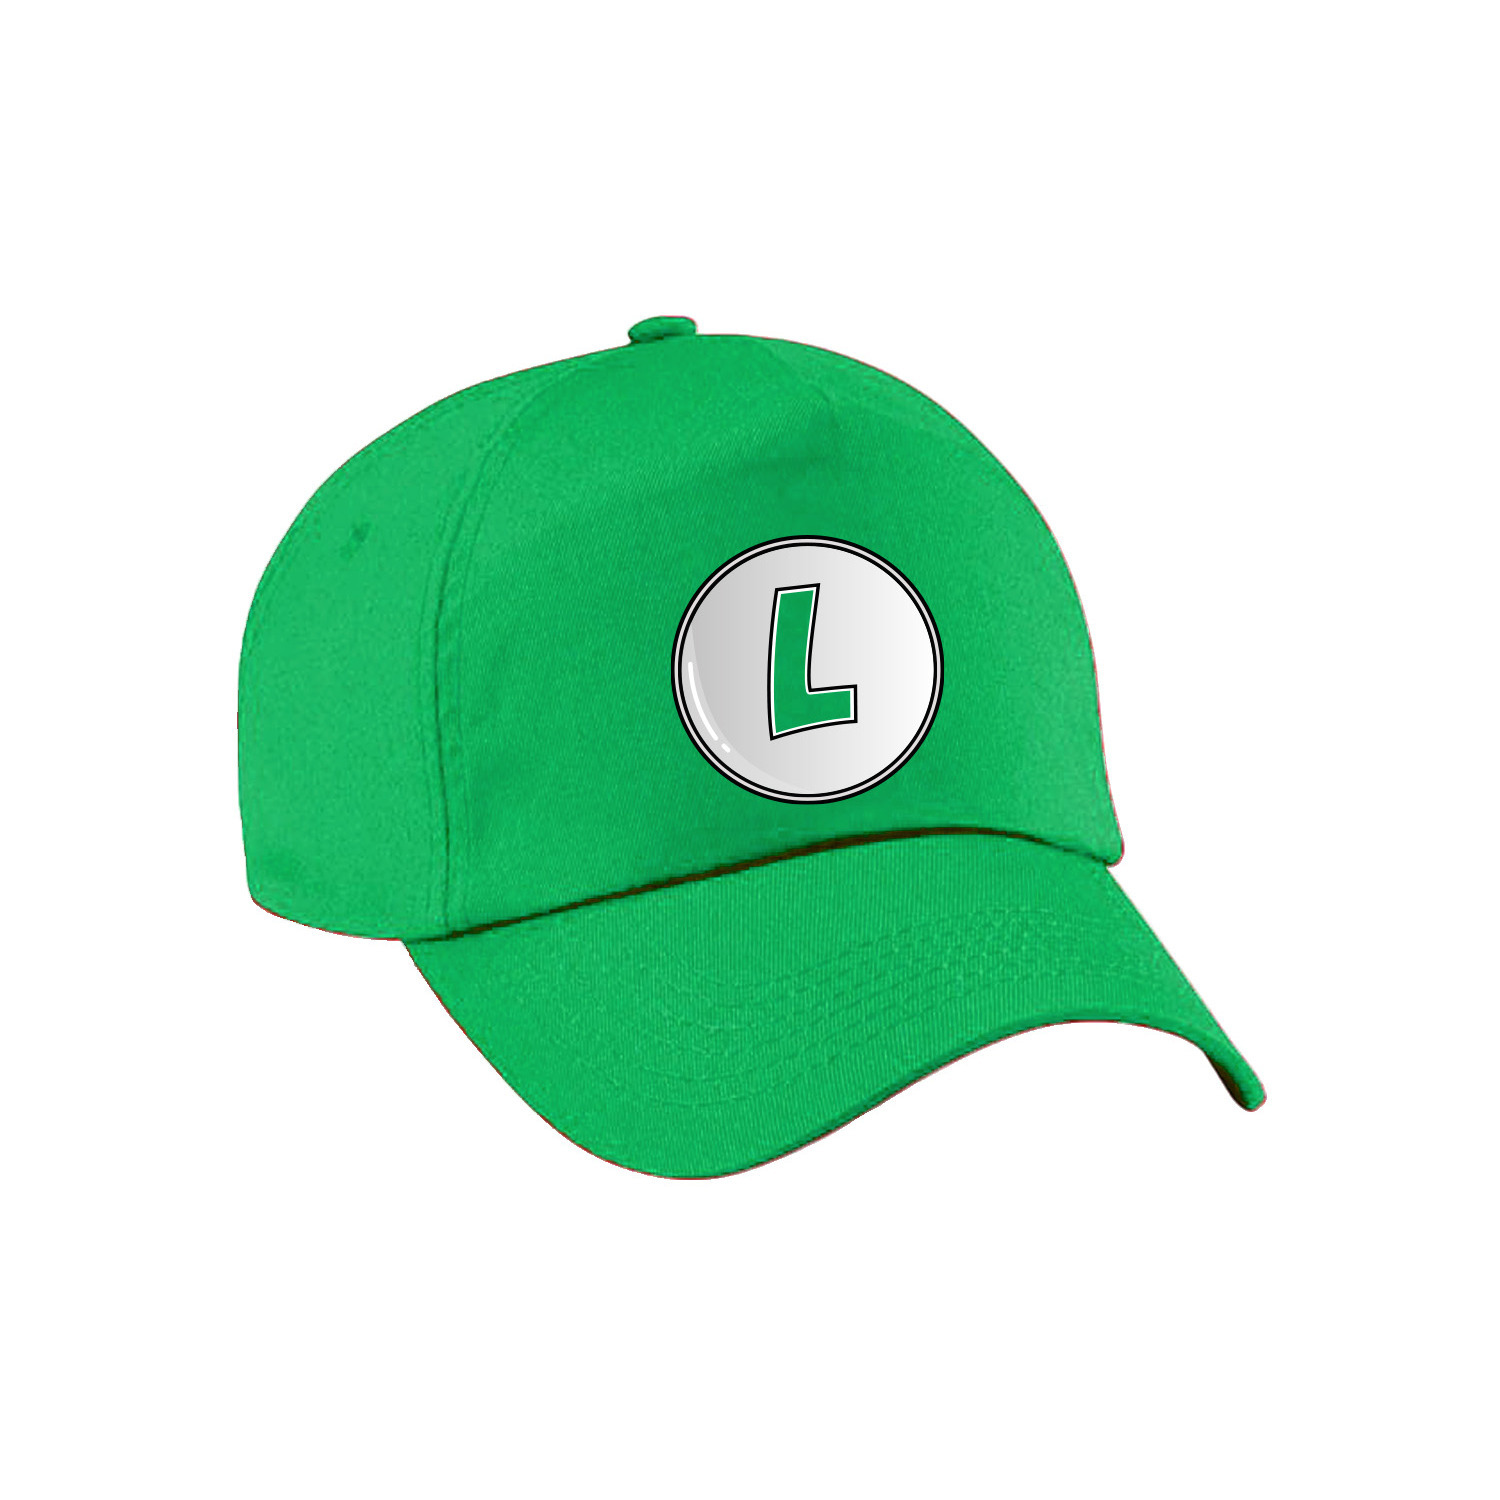 Game verkleed pet loodgieter Luigi groen kinderen unisex carnaval-themafeest outfit